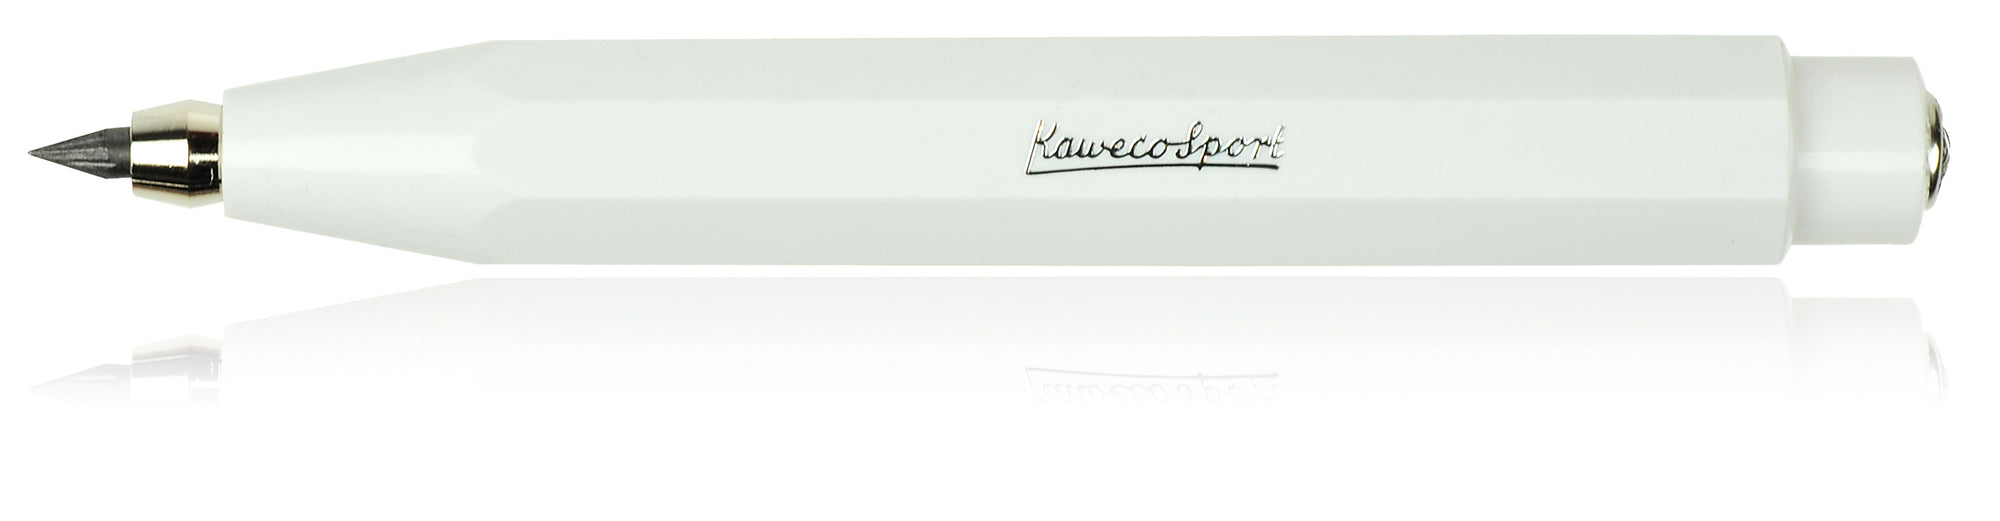 Kaweco Sport Clutch Pencil